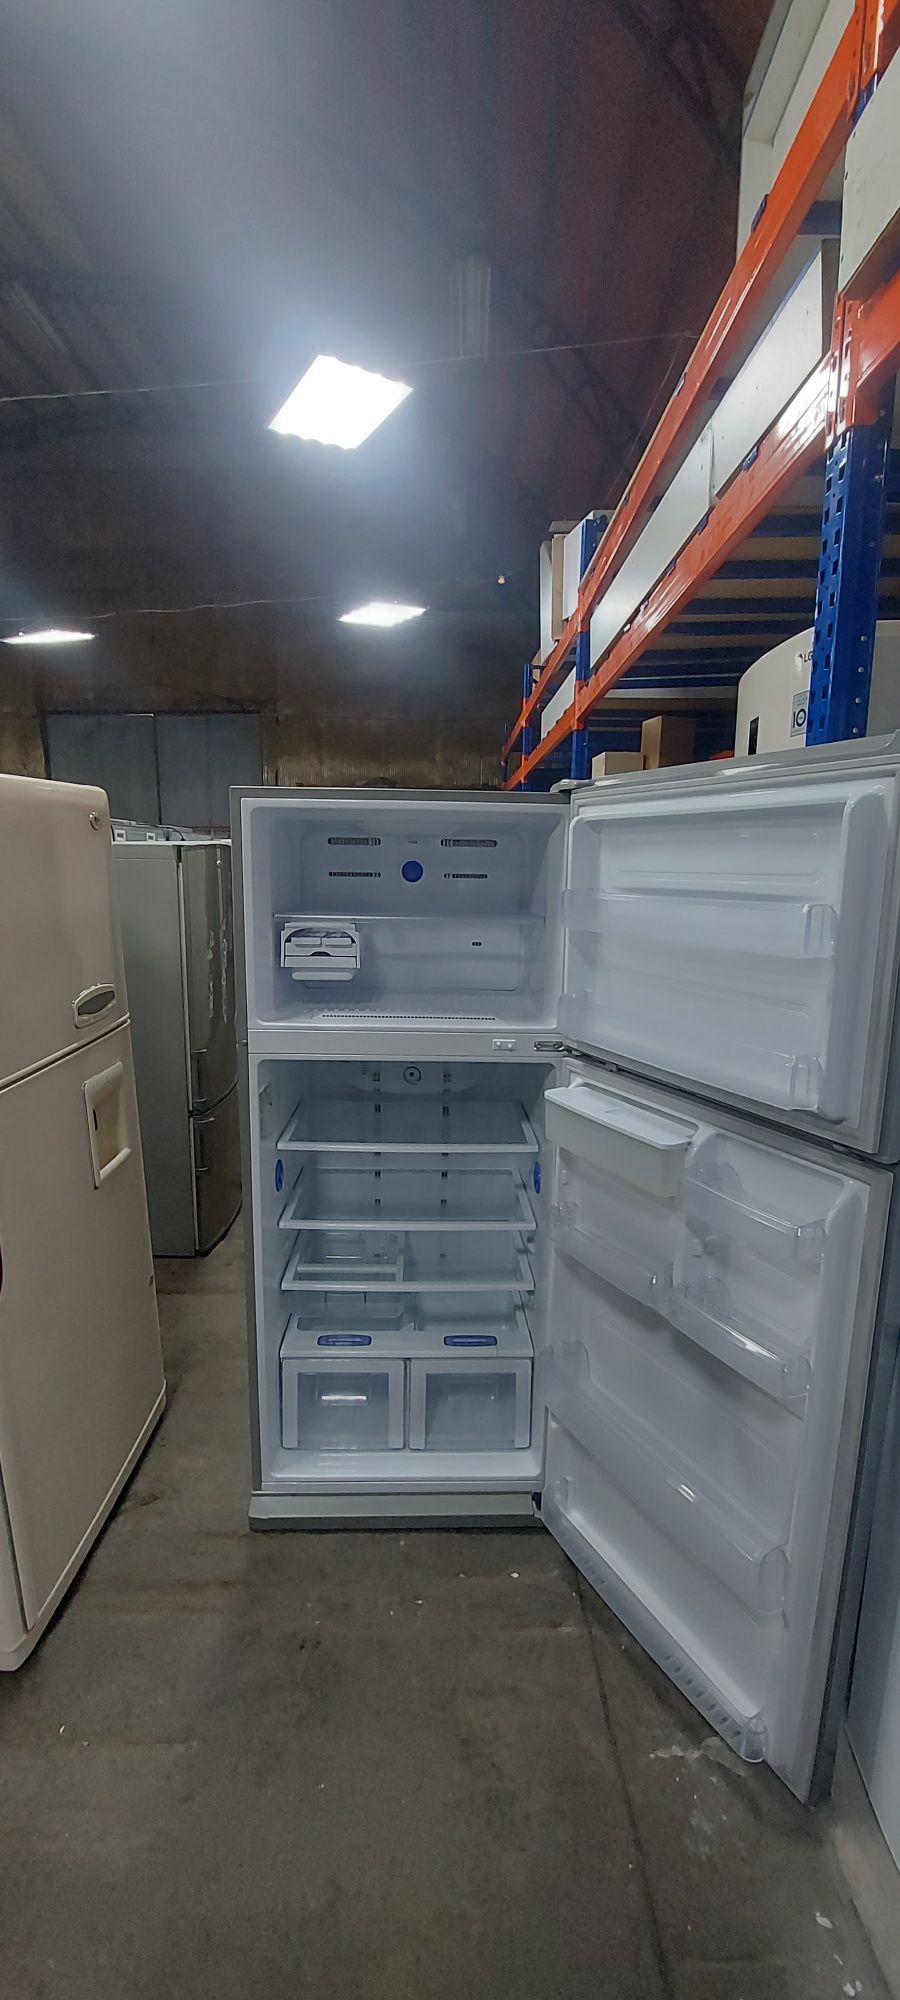 Холодильник Samsung 0,77